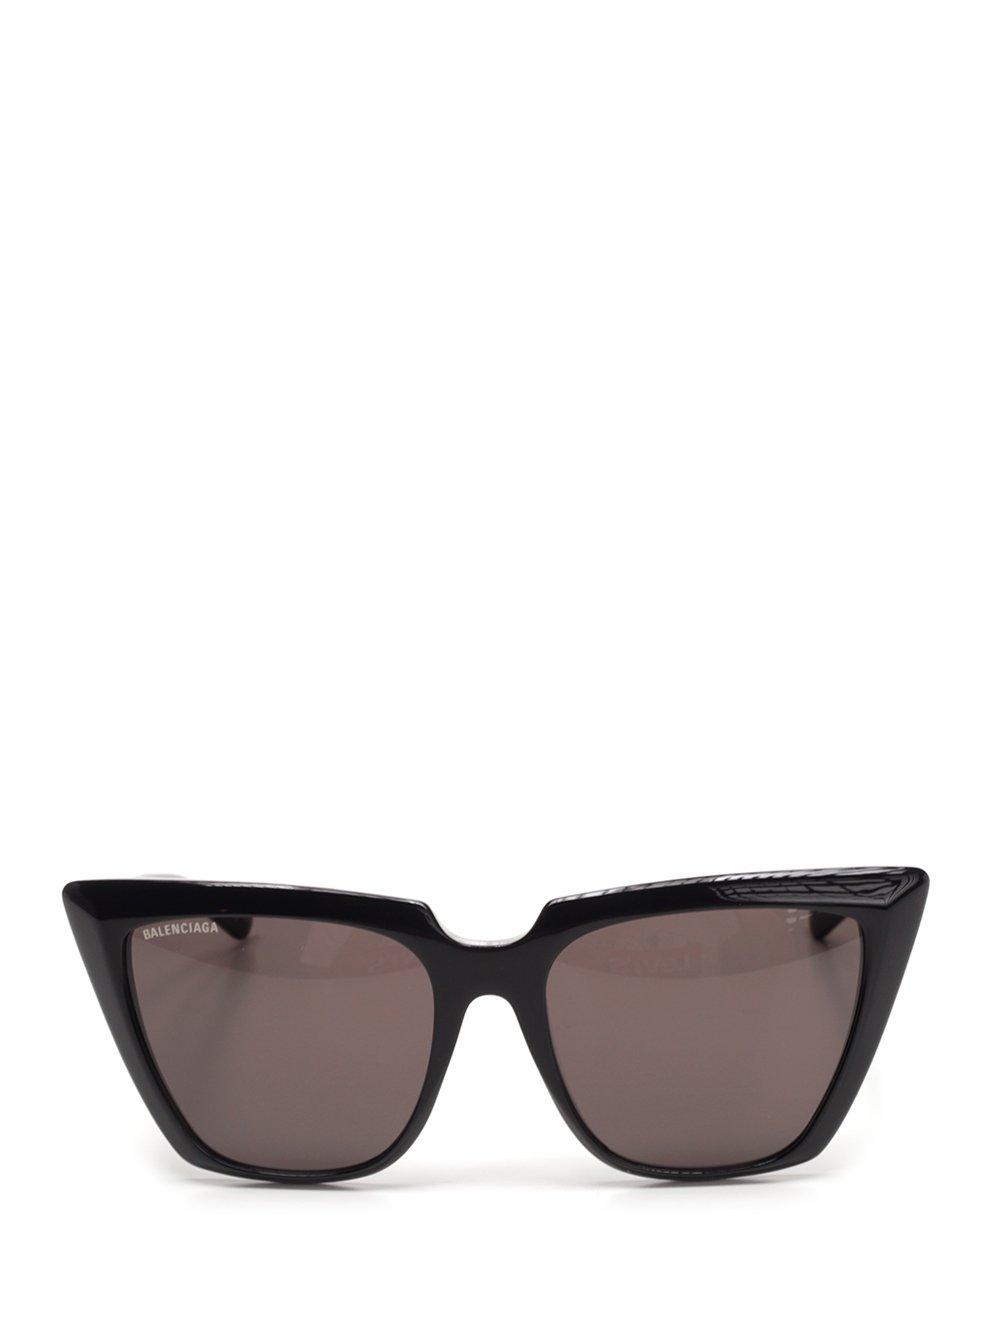 Balenciaga Cat Eye Frame Sunglasses in Black - Lyst